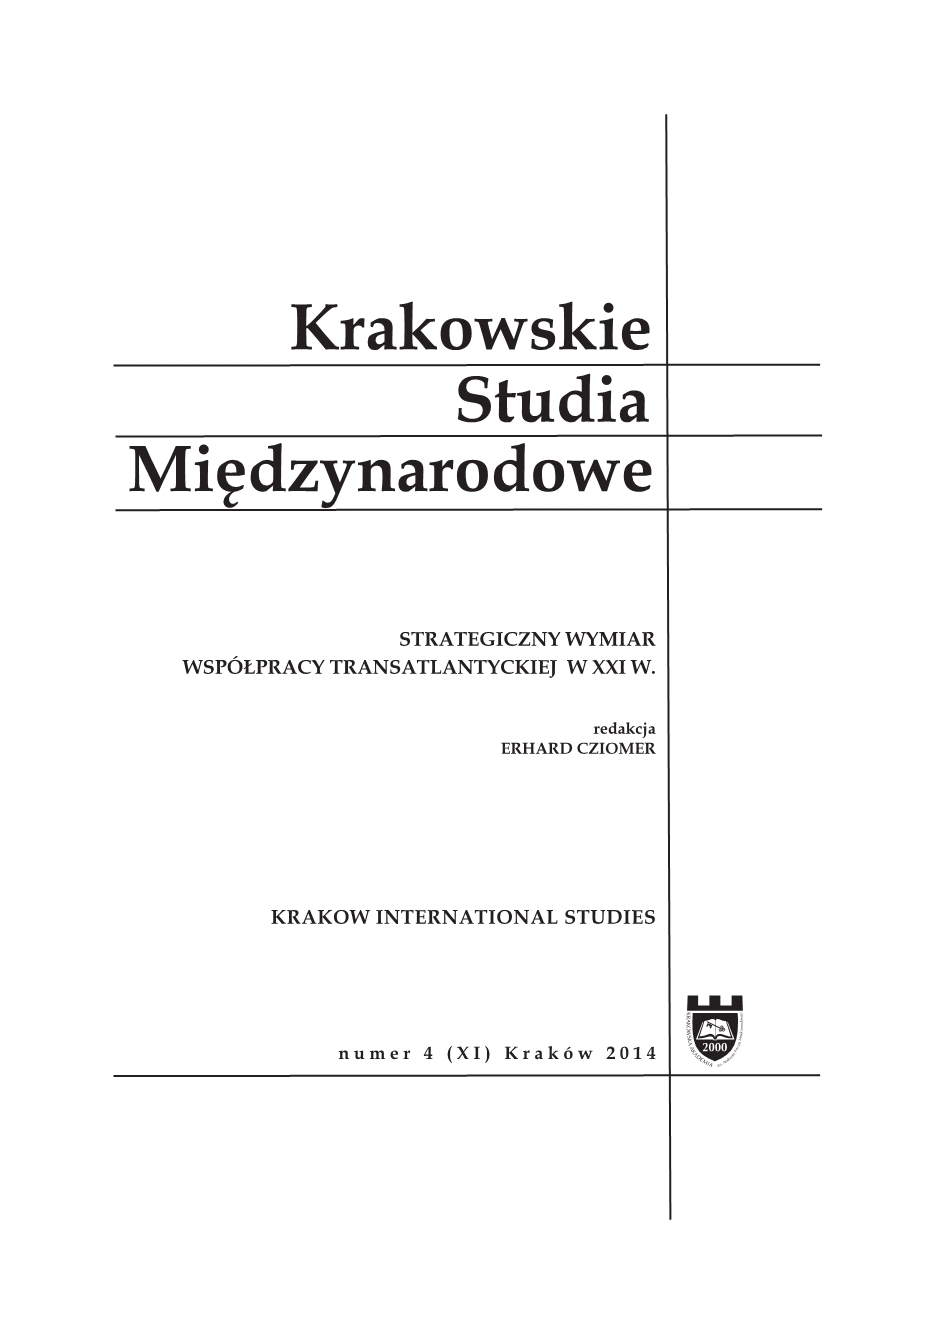 Marek Czajkowski, Missile defense in international relations, [Wydawnictwo Uniwersytetu Jagiellońskiego, Kraków 2013, 380 pp.] Cover Image